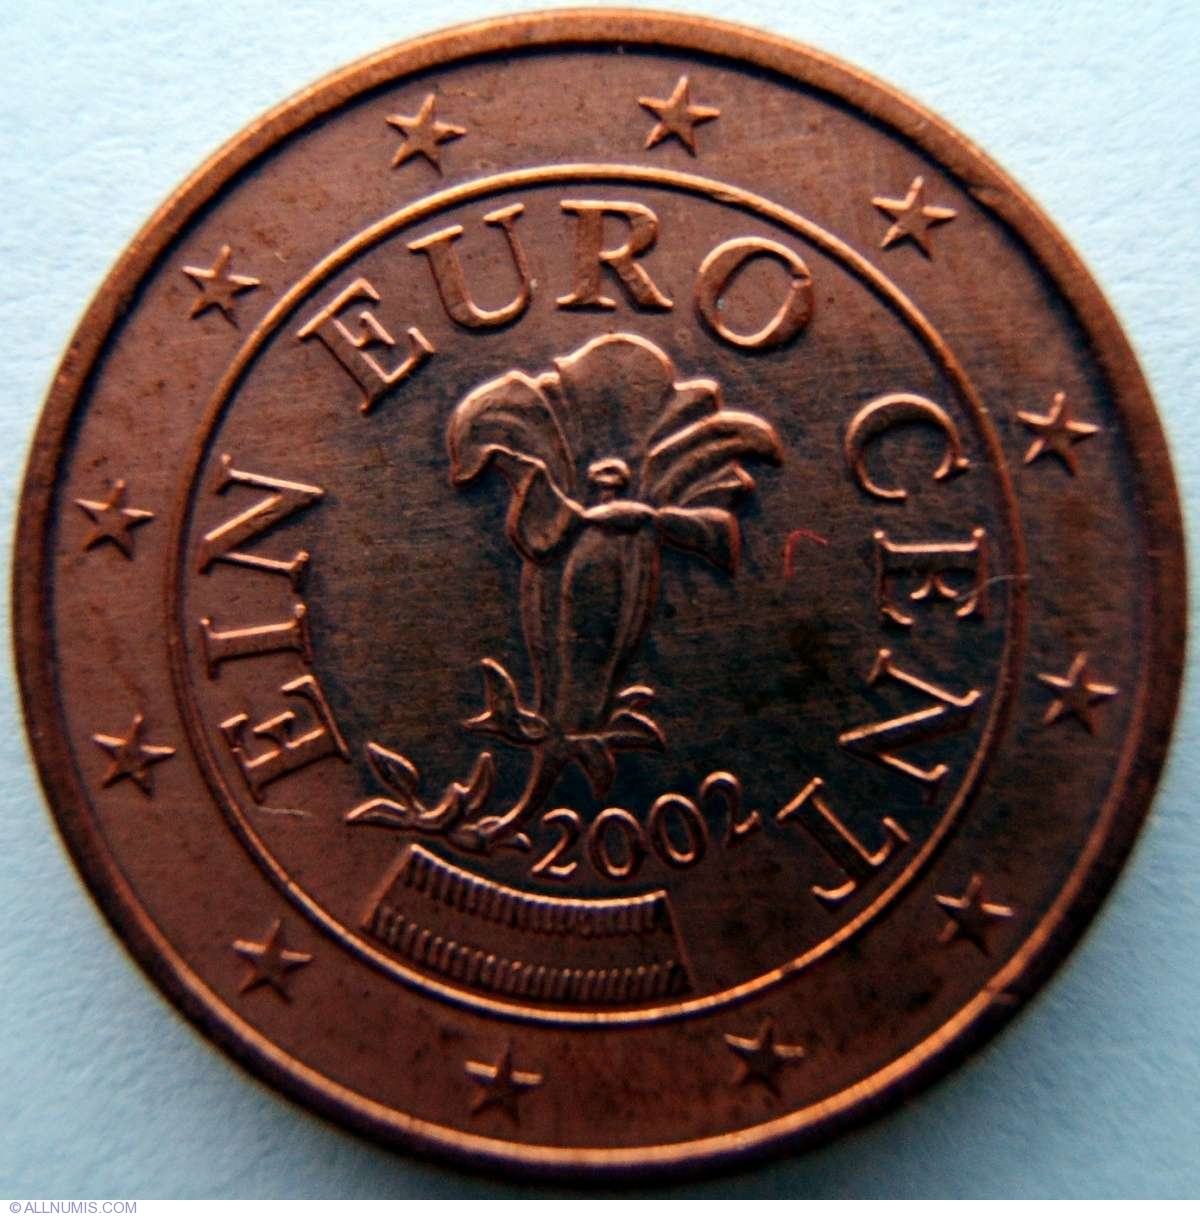 2002 20 euro cent austria